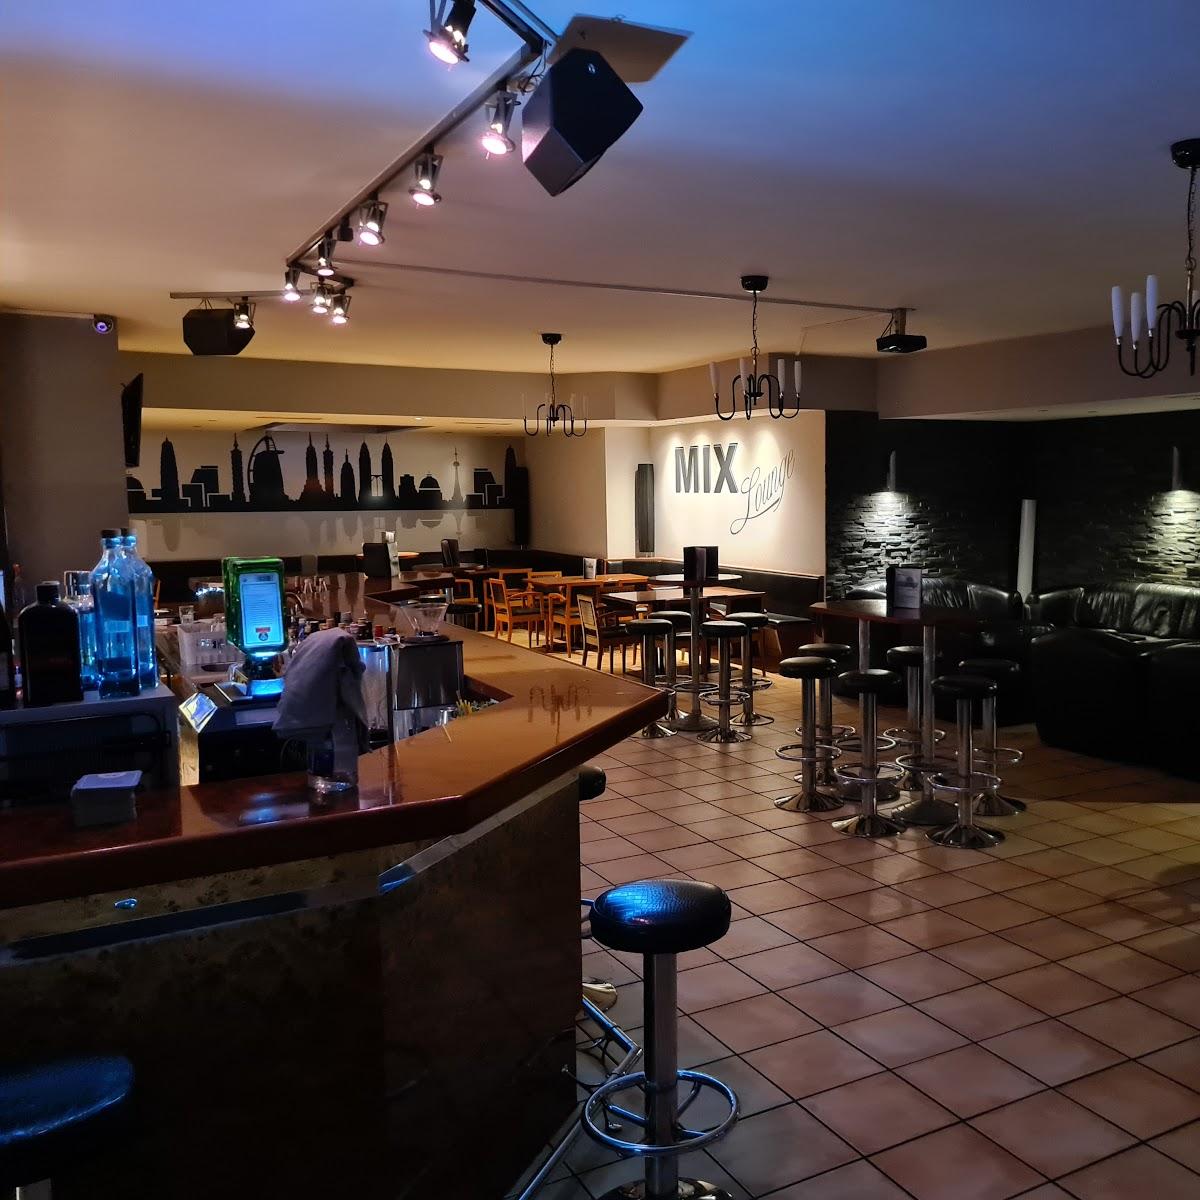 Restaurant "Mix Lounge - Bar & Lounge" in Taufkirchen (Vils)